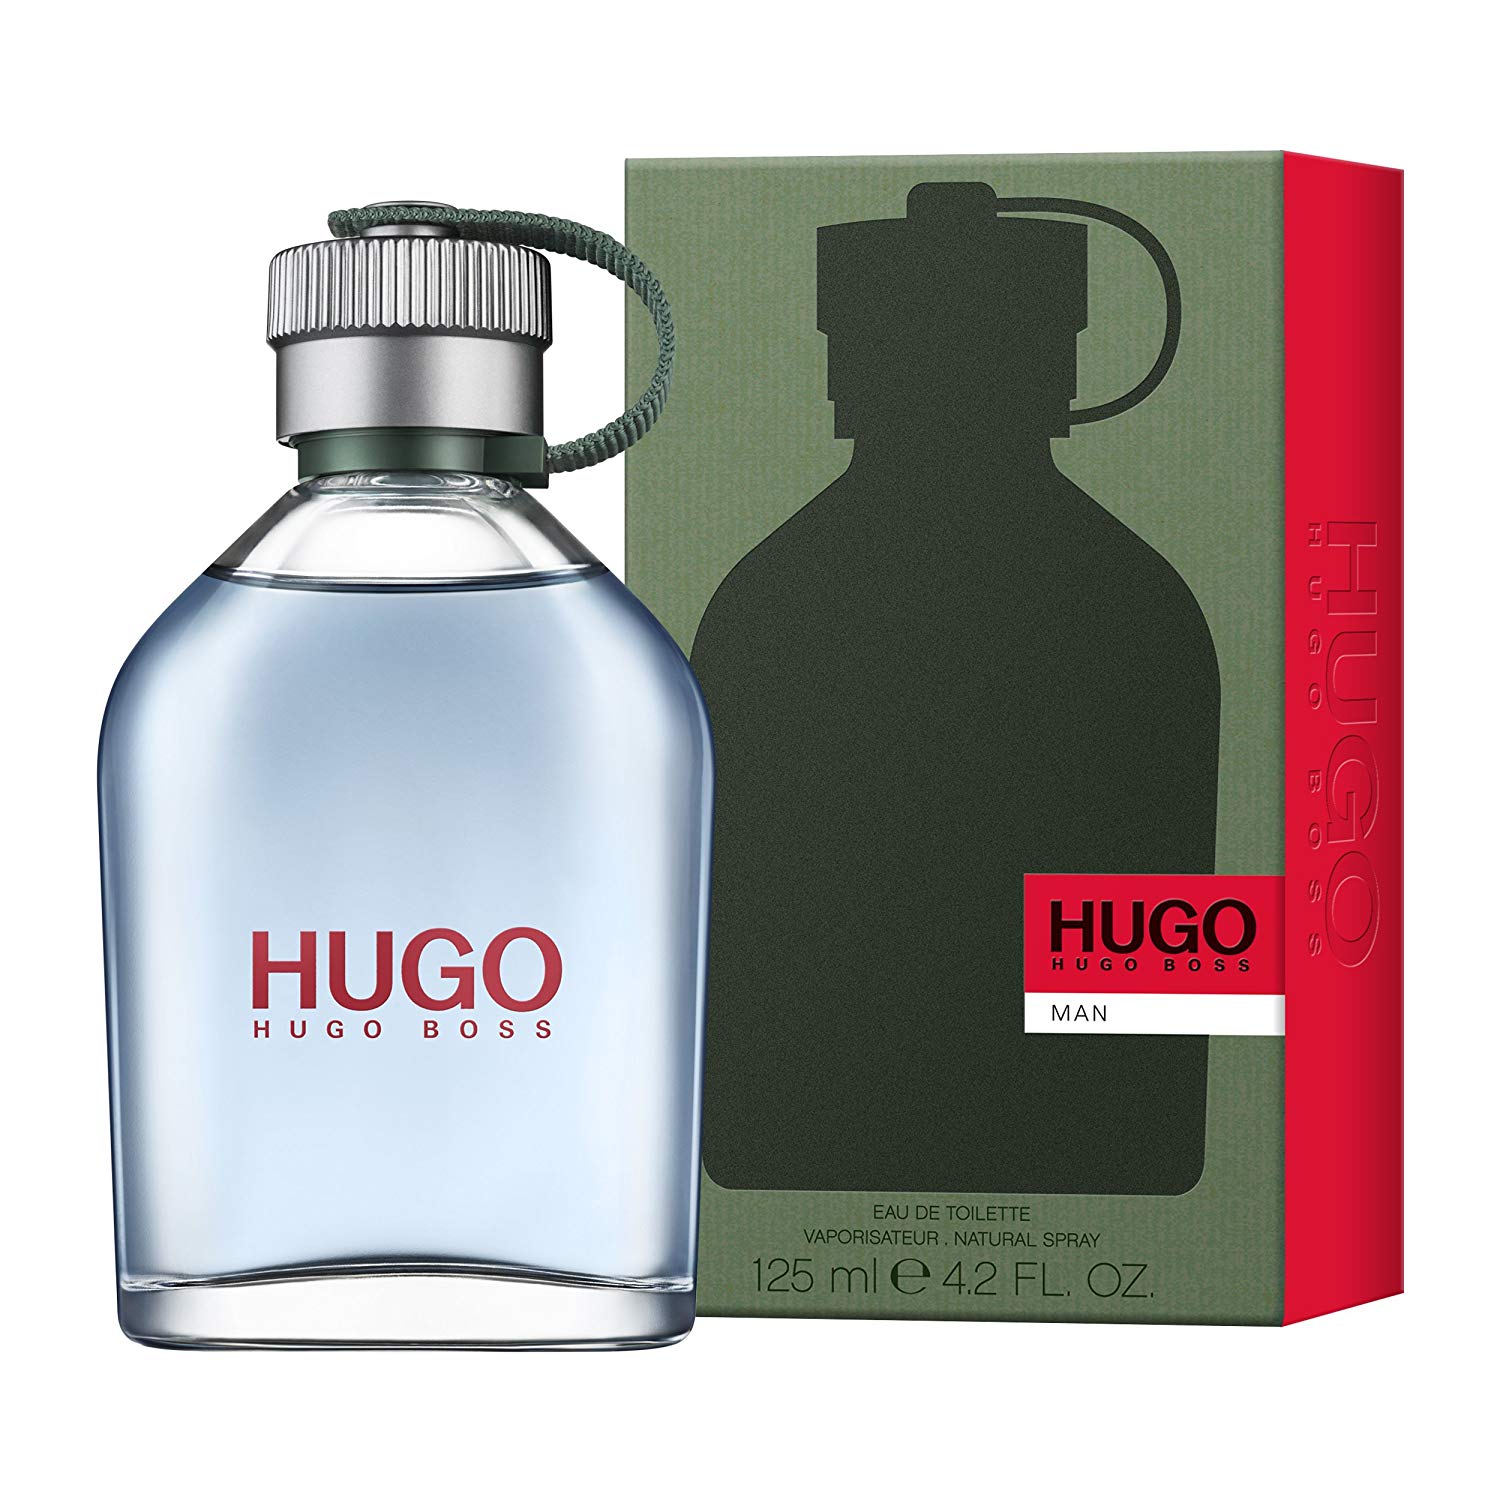 hugo boss original cologne